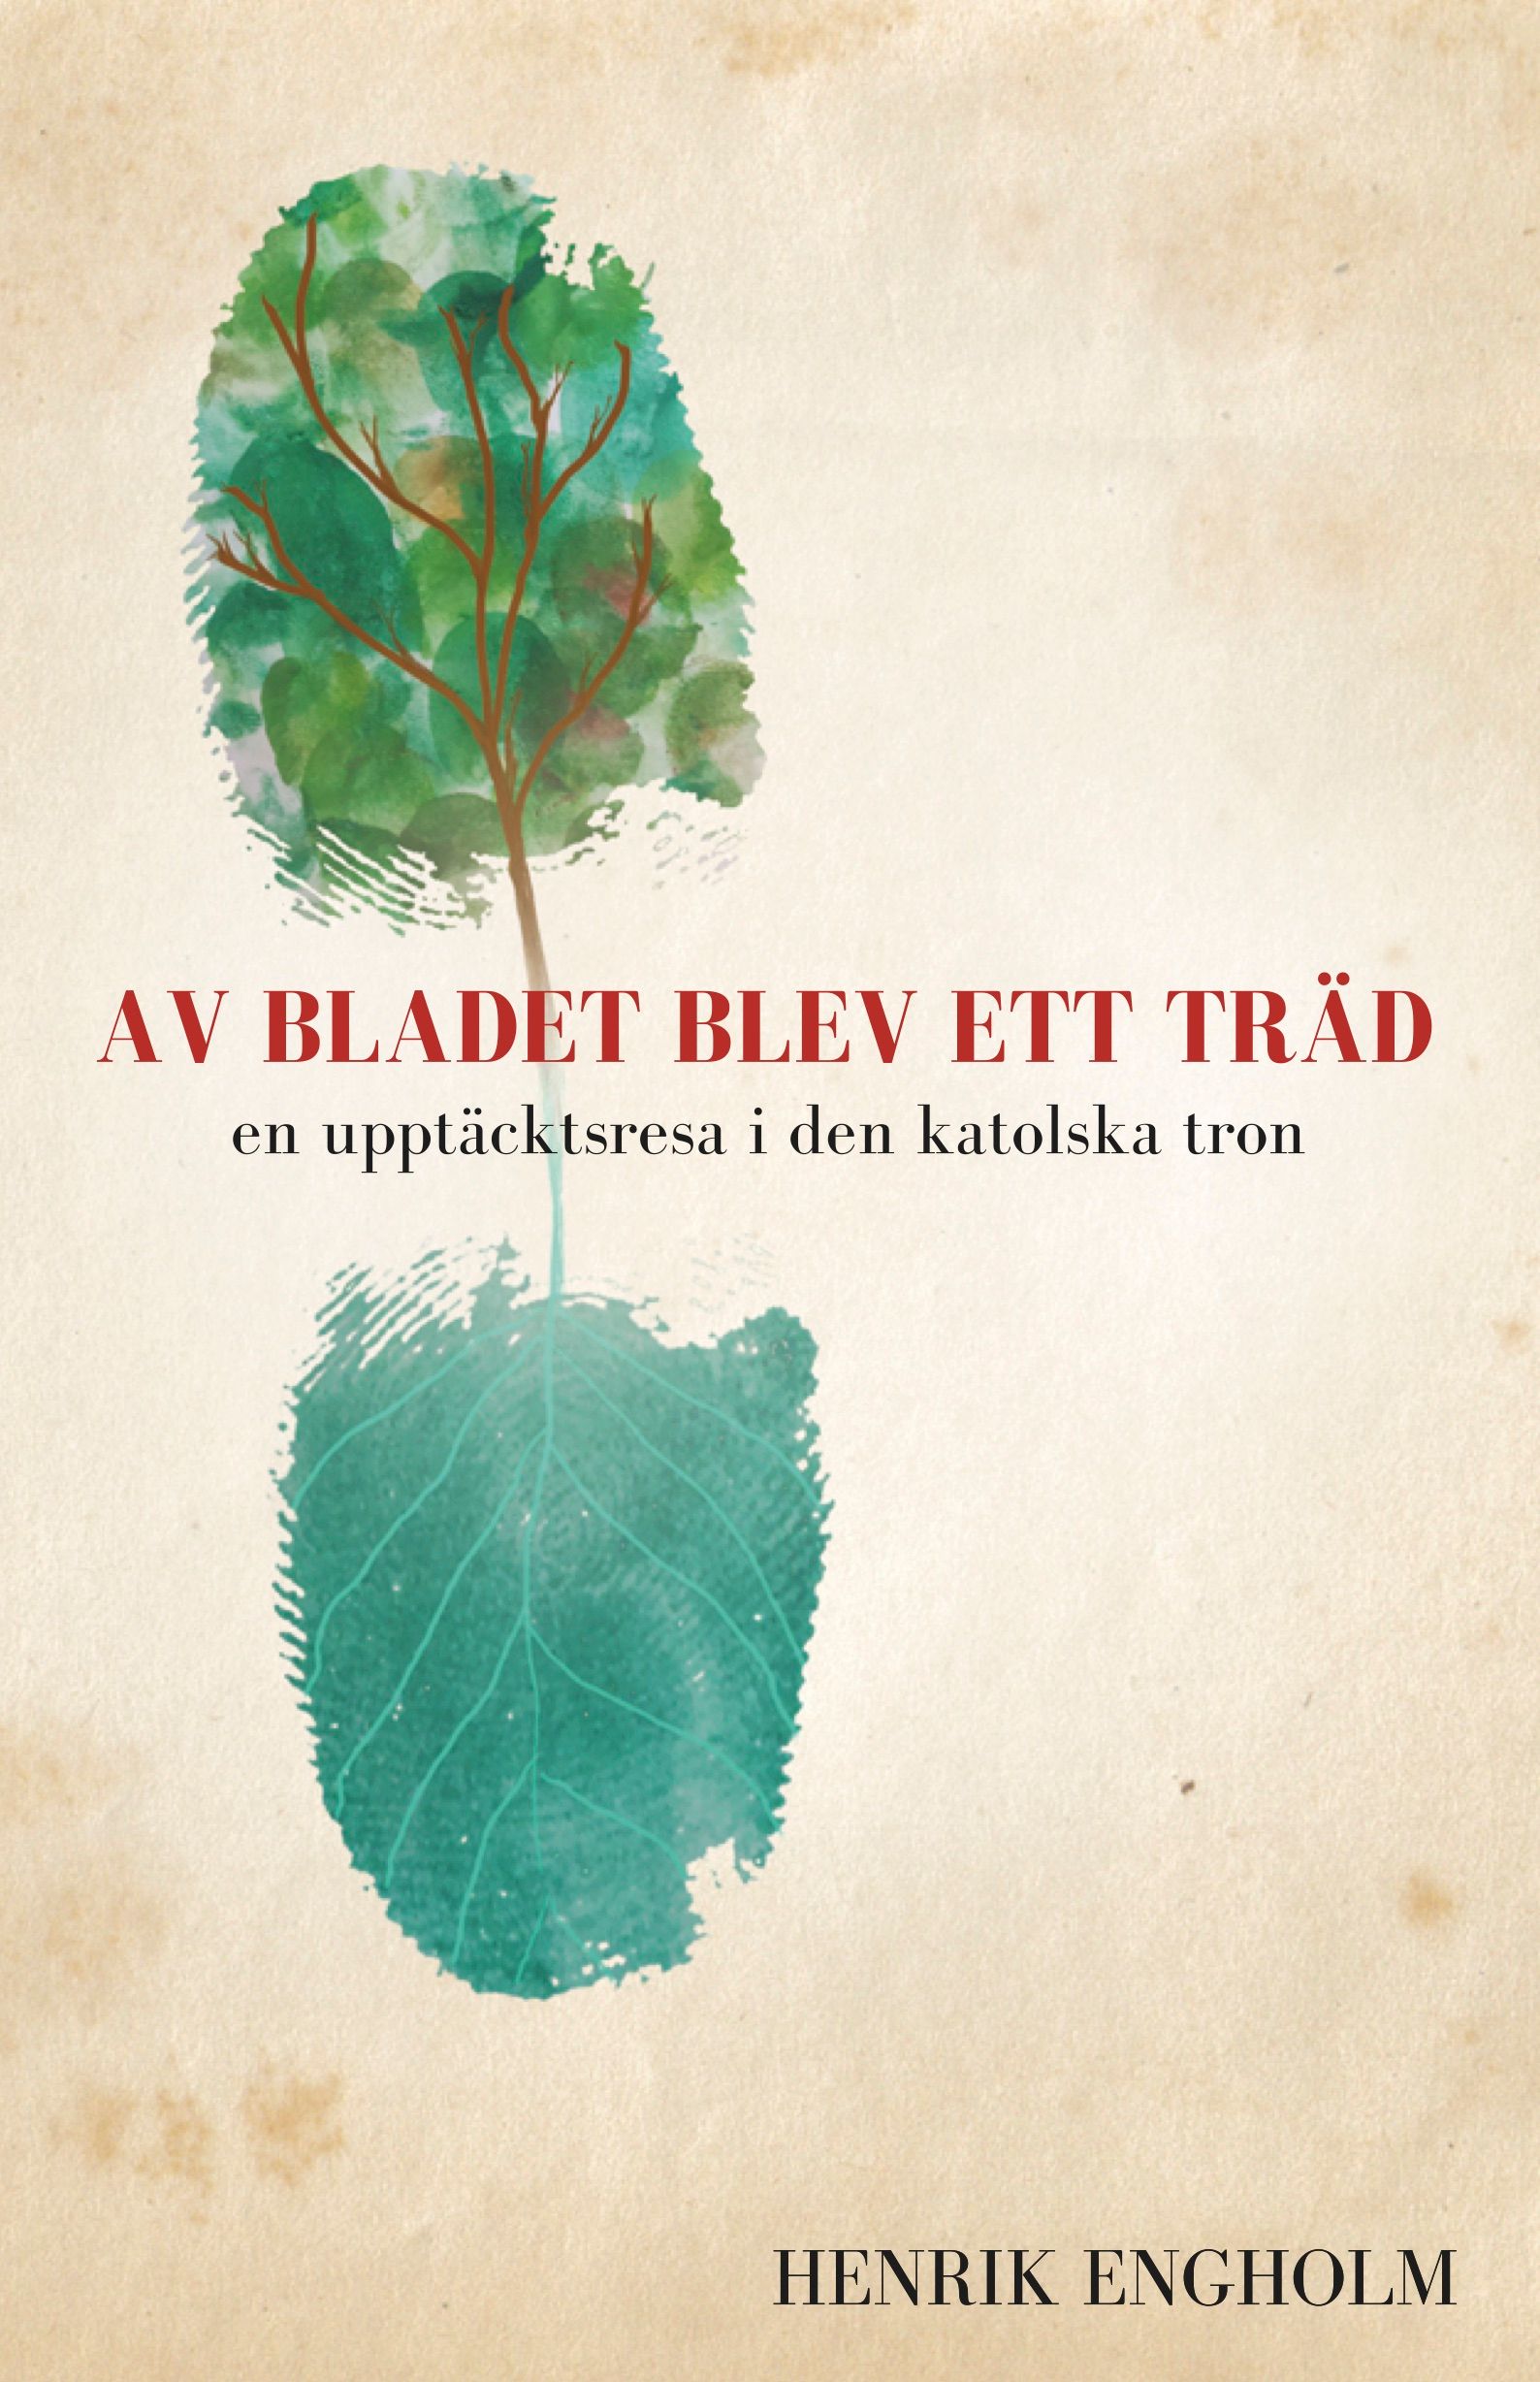 Av bladet blev ett träd, eBook by Henrik Engholm